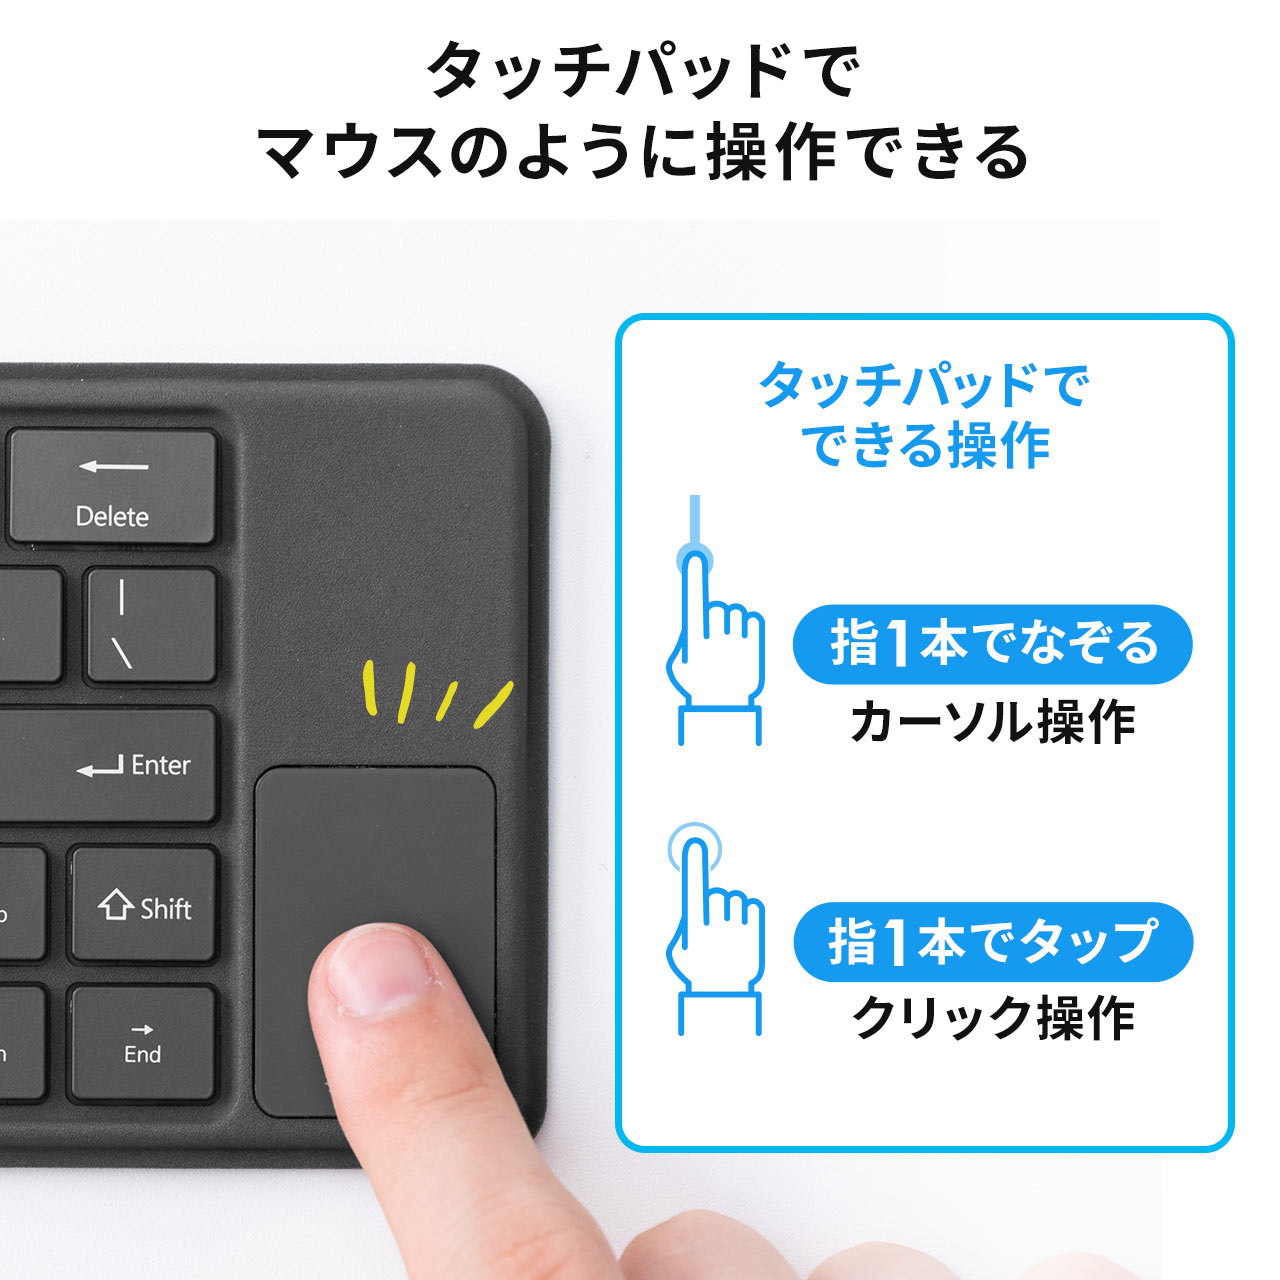 折りたたみ Bluetoothキーボード タッチパッド搭載 充電式 iPhone iPad用 英語配列 マルチペアリング対応 400-SKB070